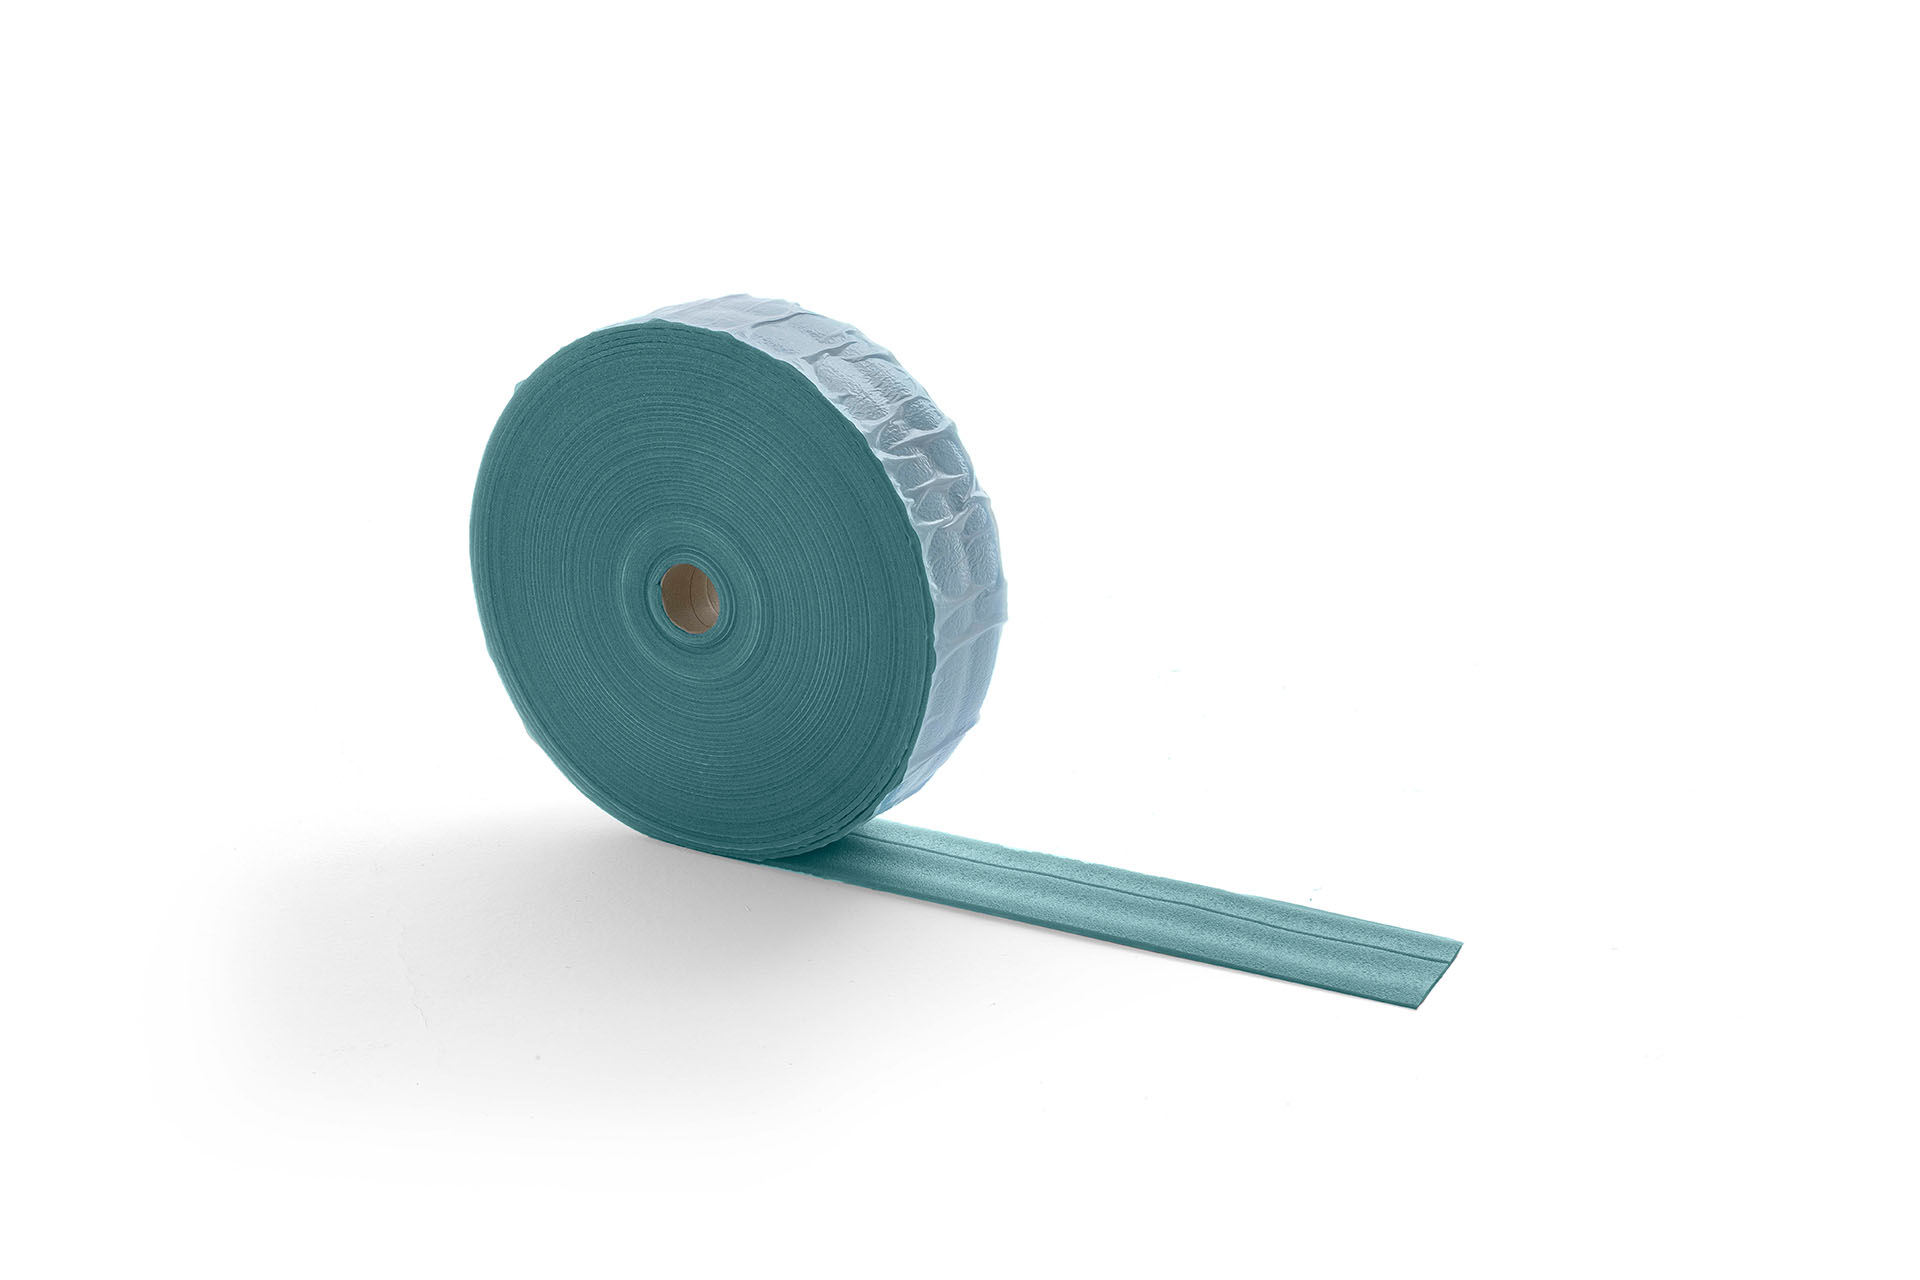 Self-adhesive insulating perimeter band